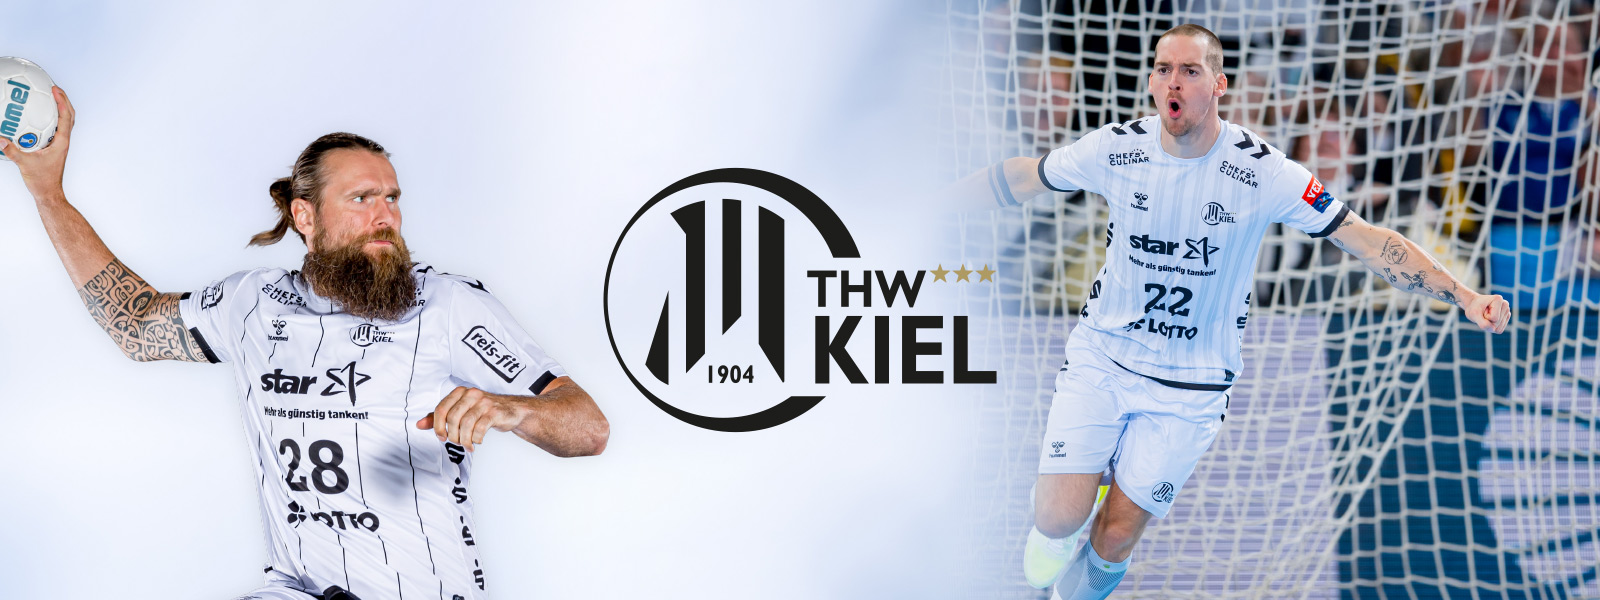 Twee -verdeelde foto van THW Kiel Handballer met een baard bij de worp aan de linkerkant en andere spelers op het veld op het veld aan de rechterkant	 tussen het logo van de club daartussenin